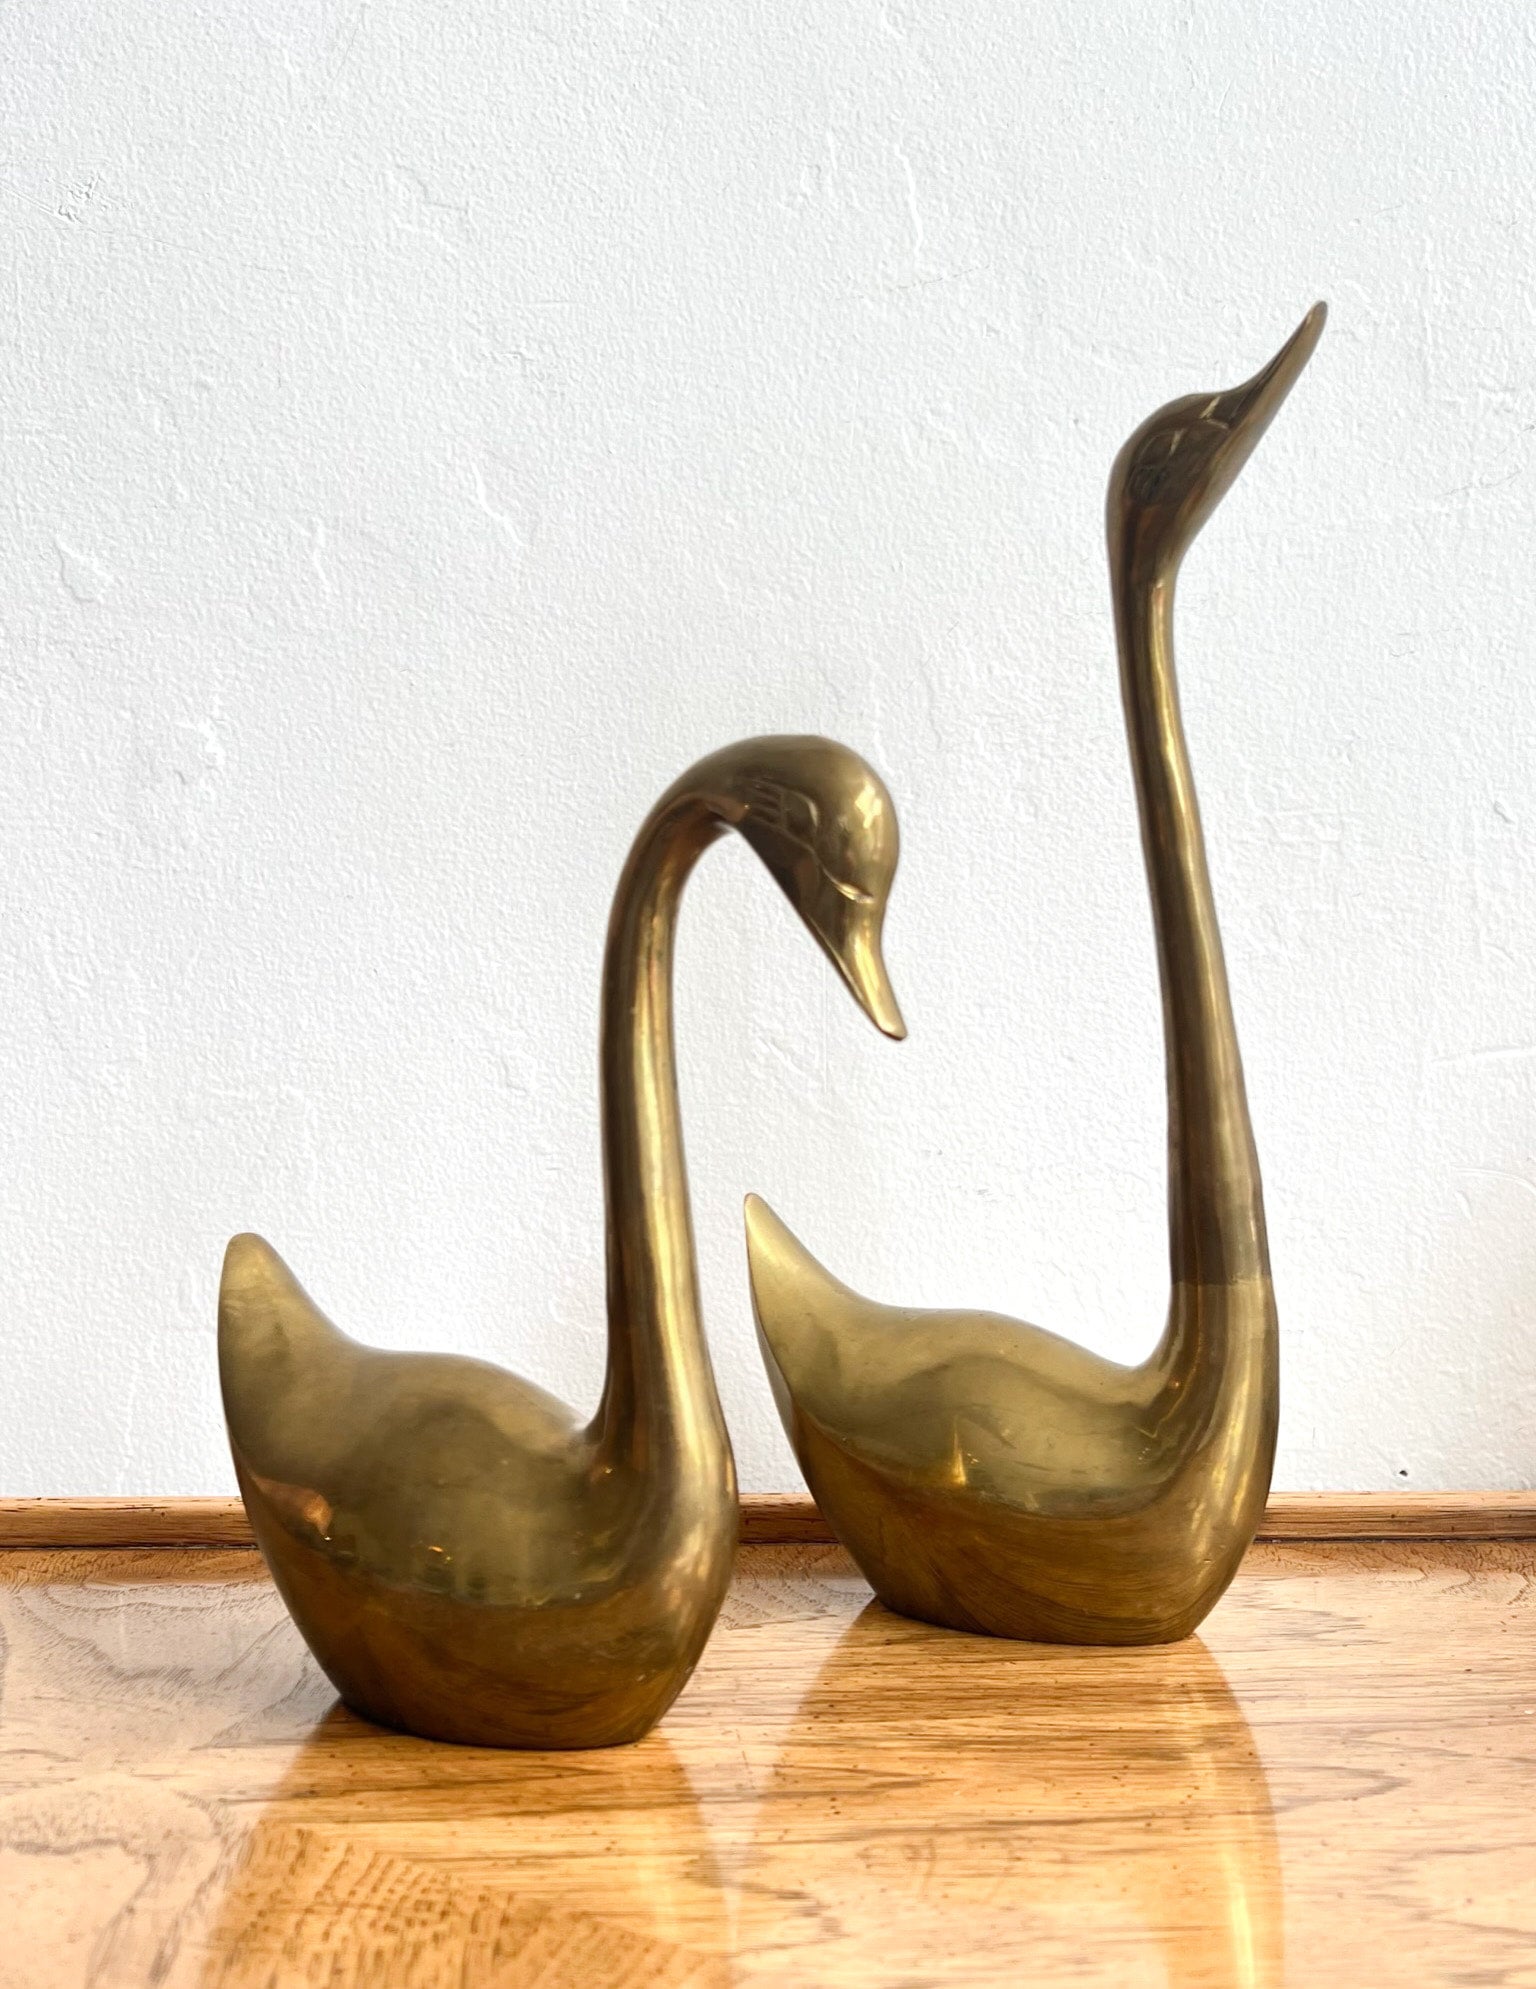 Brass swan figurine, made in Korea: 23,500 ppm Lead (90 ppm is